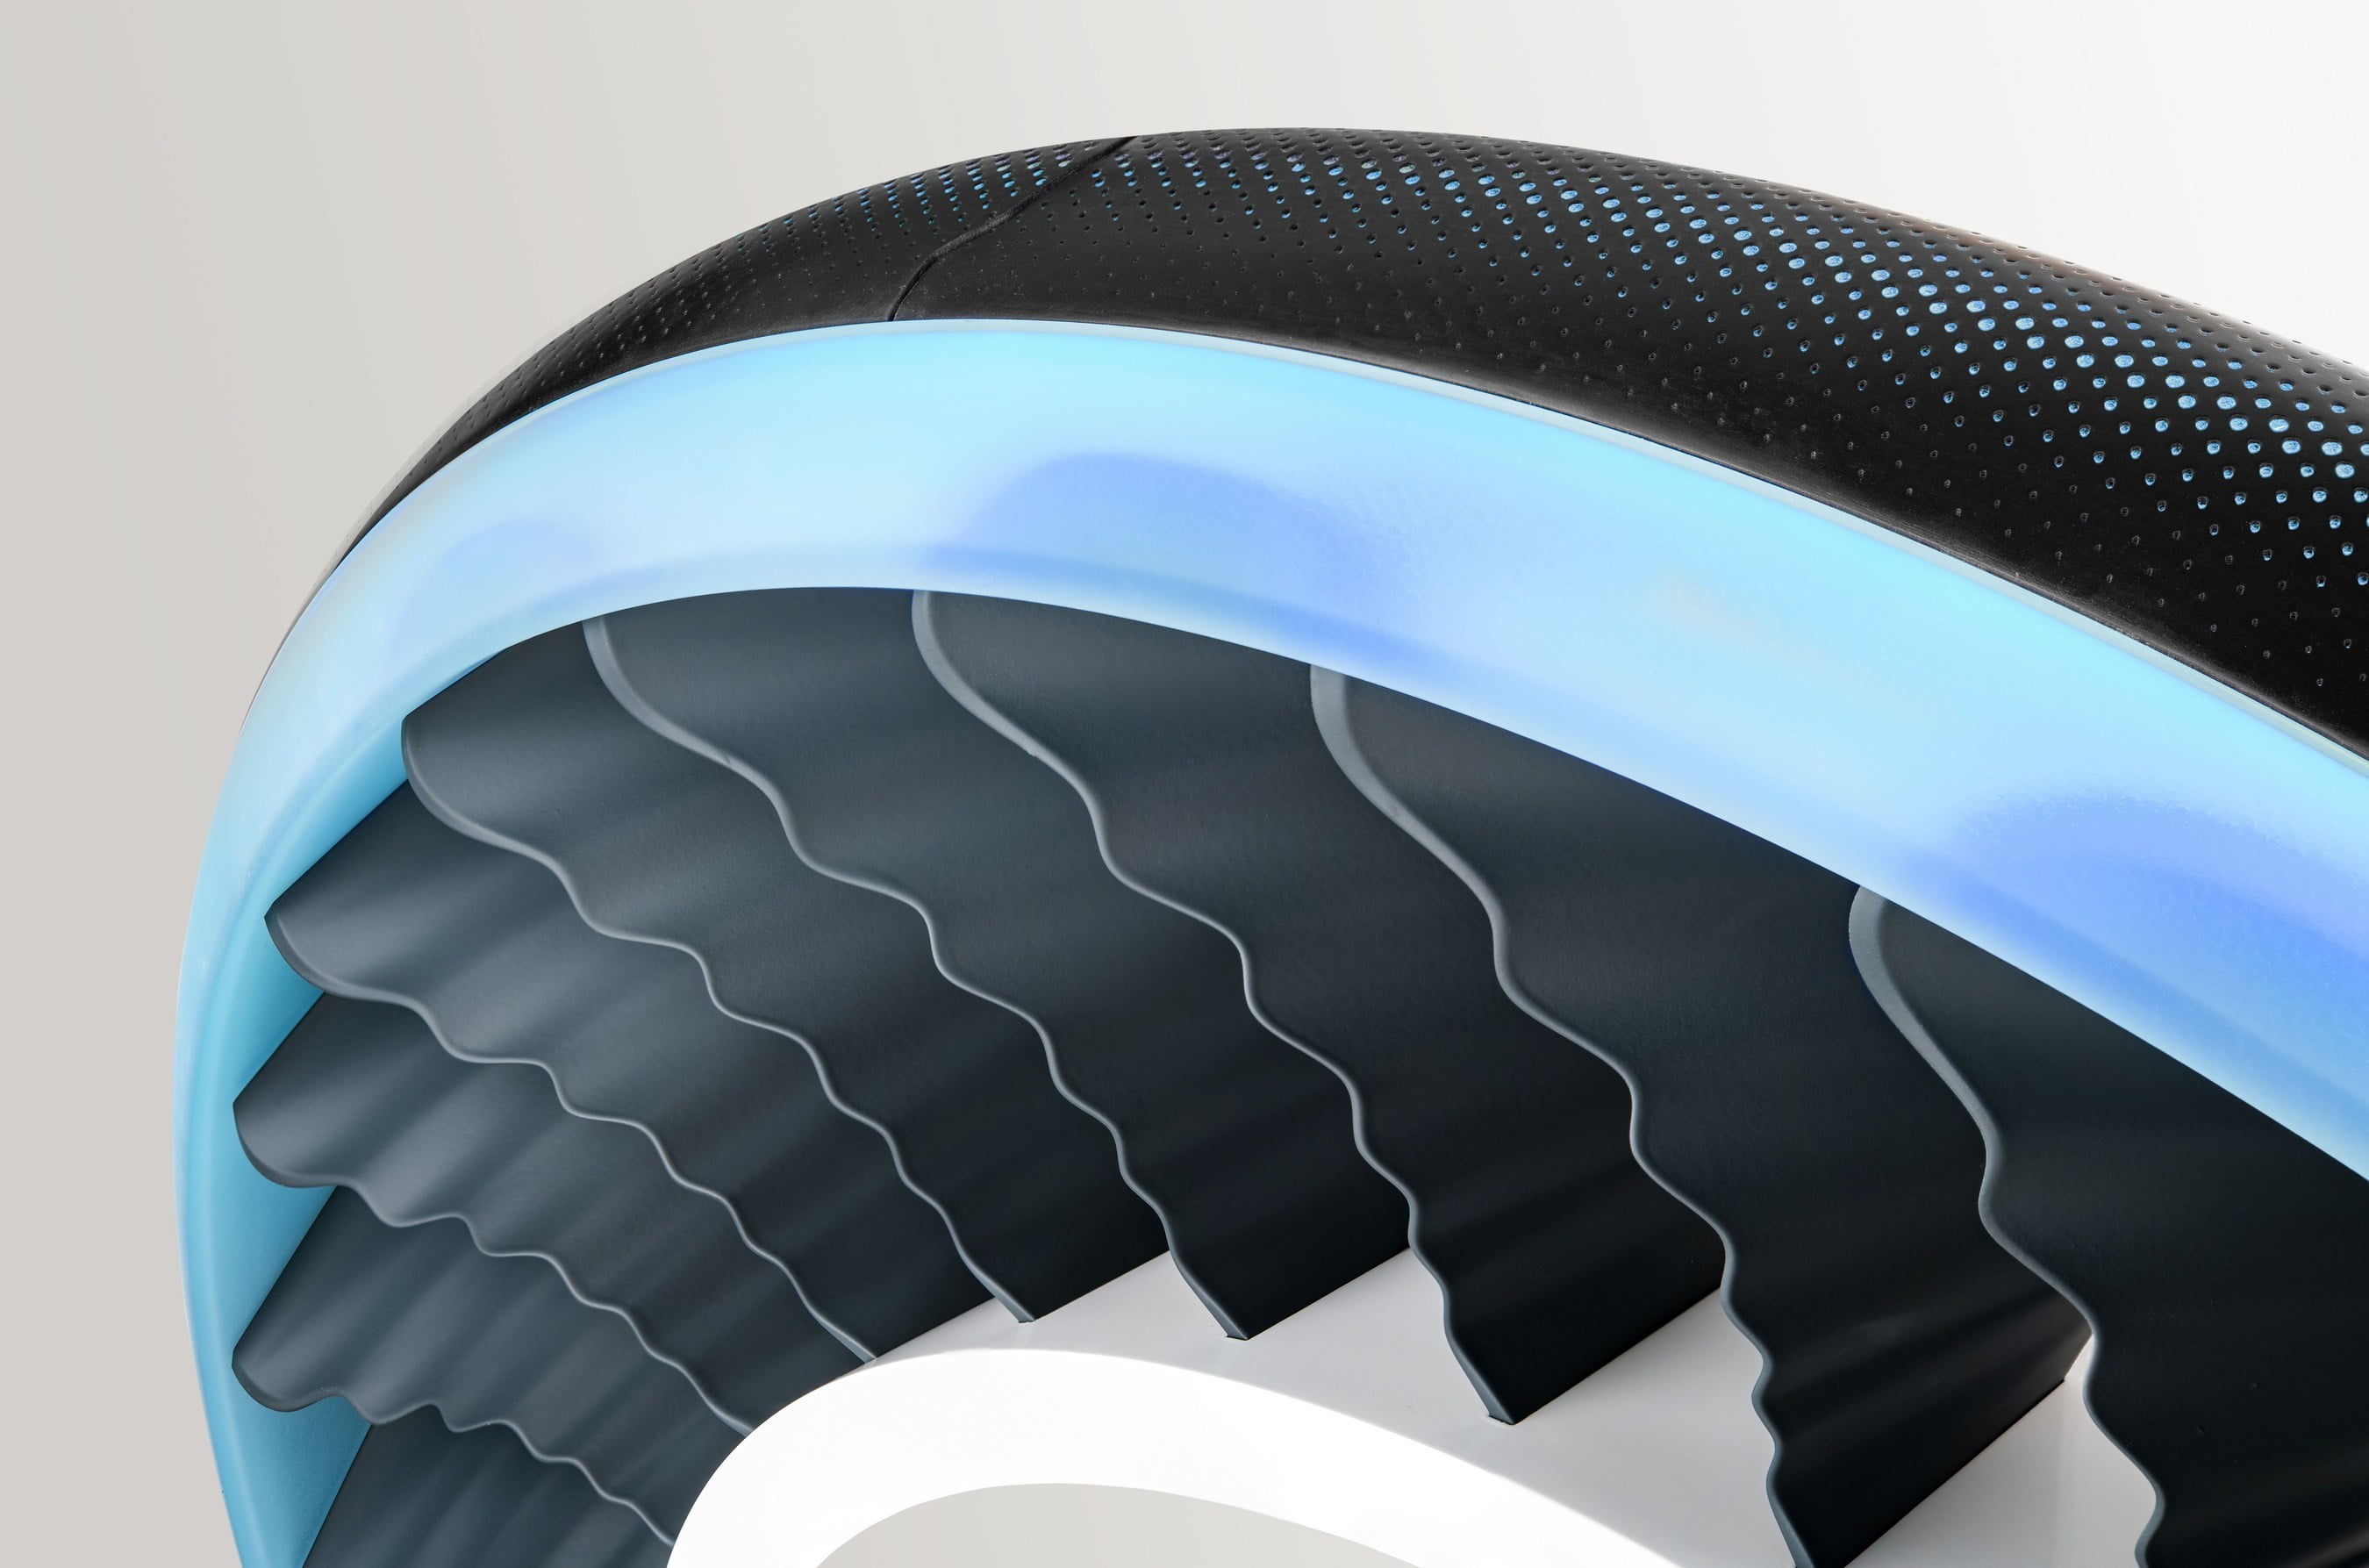 Nya Goodyear däck kan förvandlas till propellrar för flygande maskiner